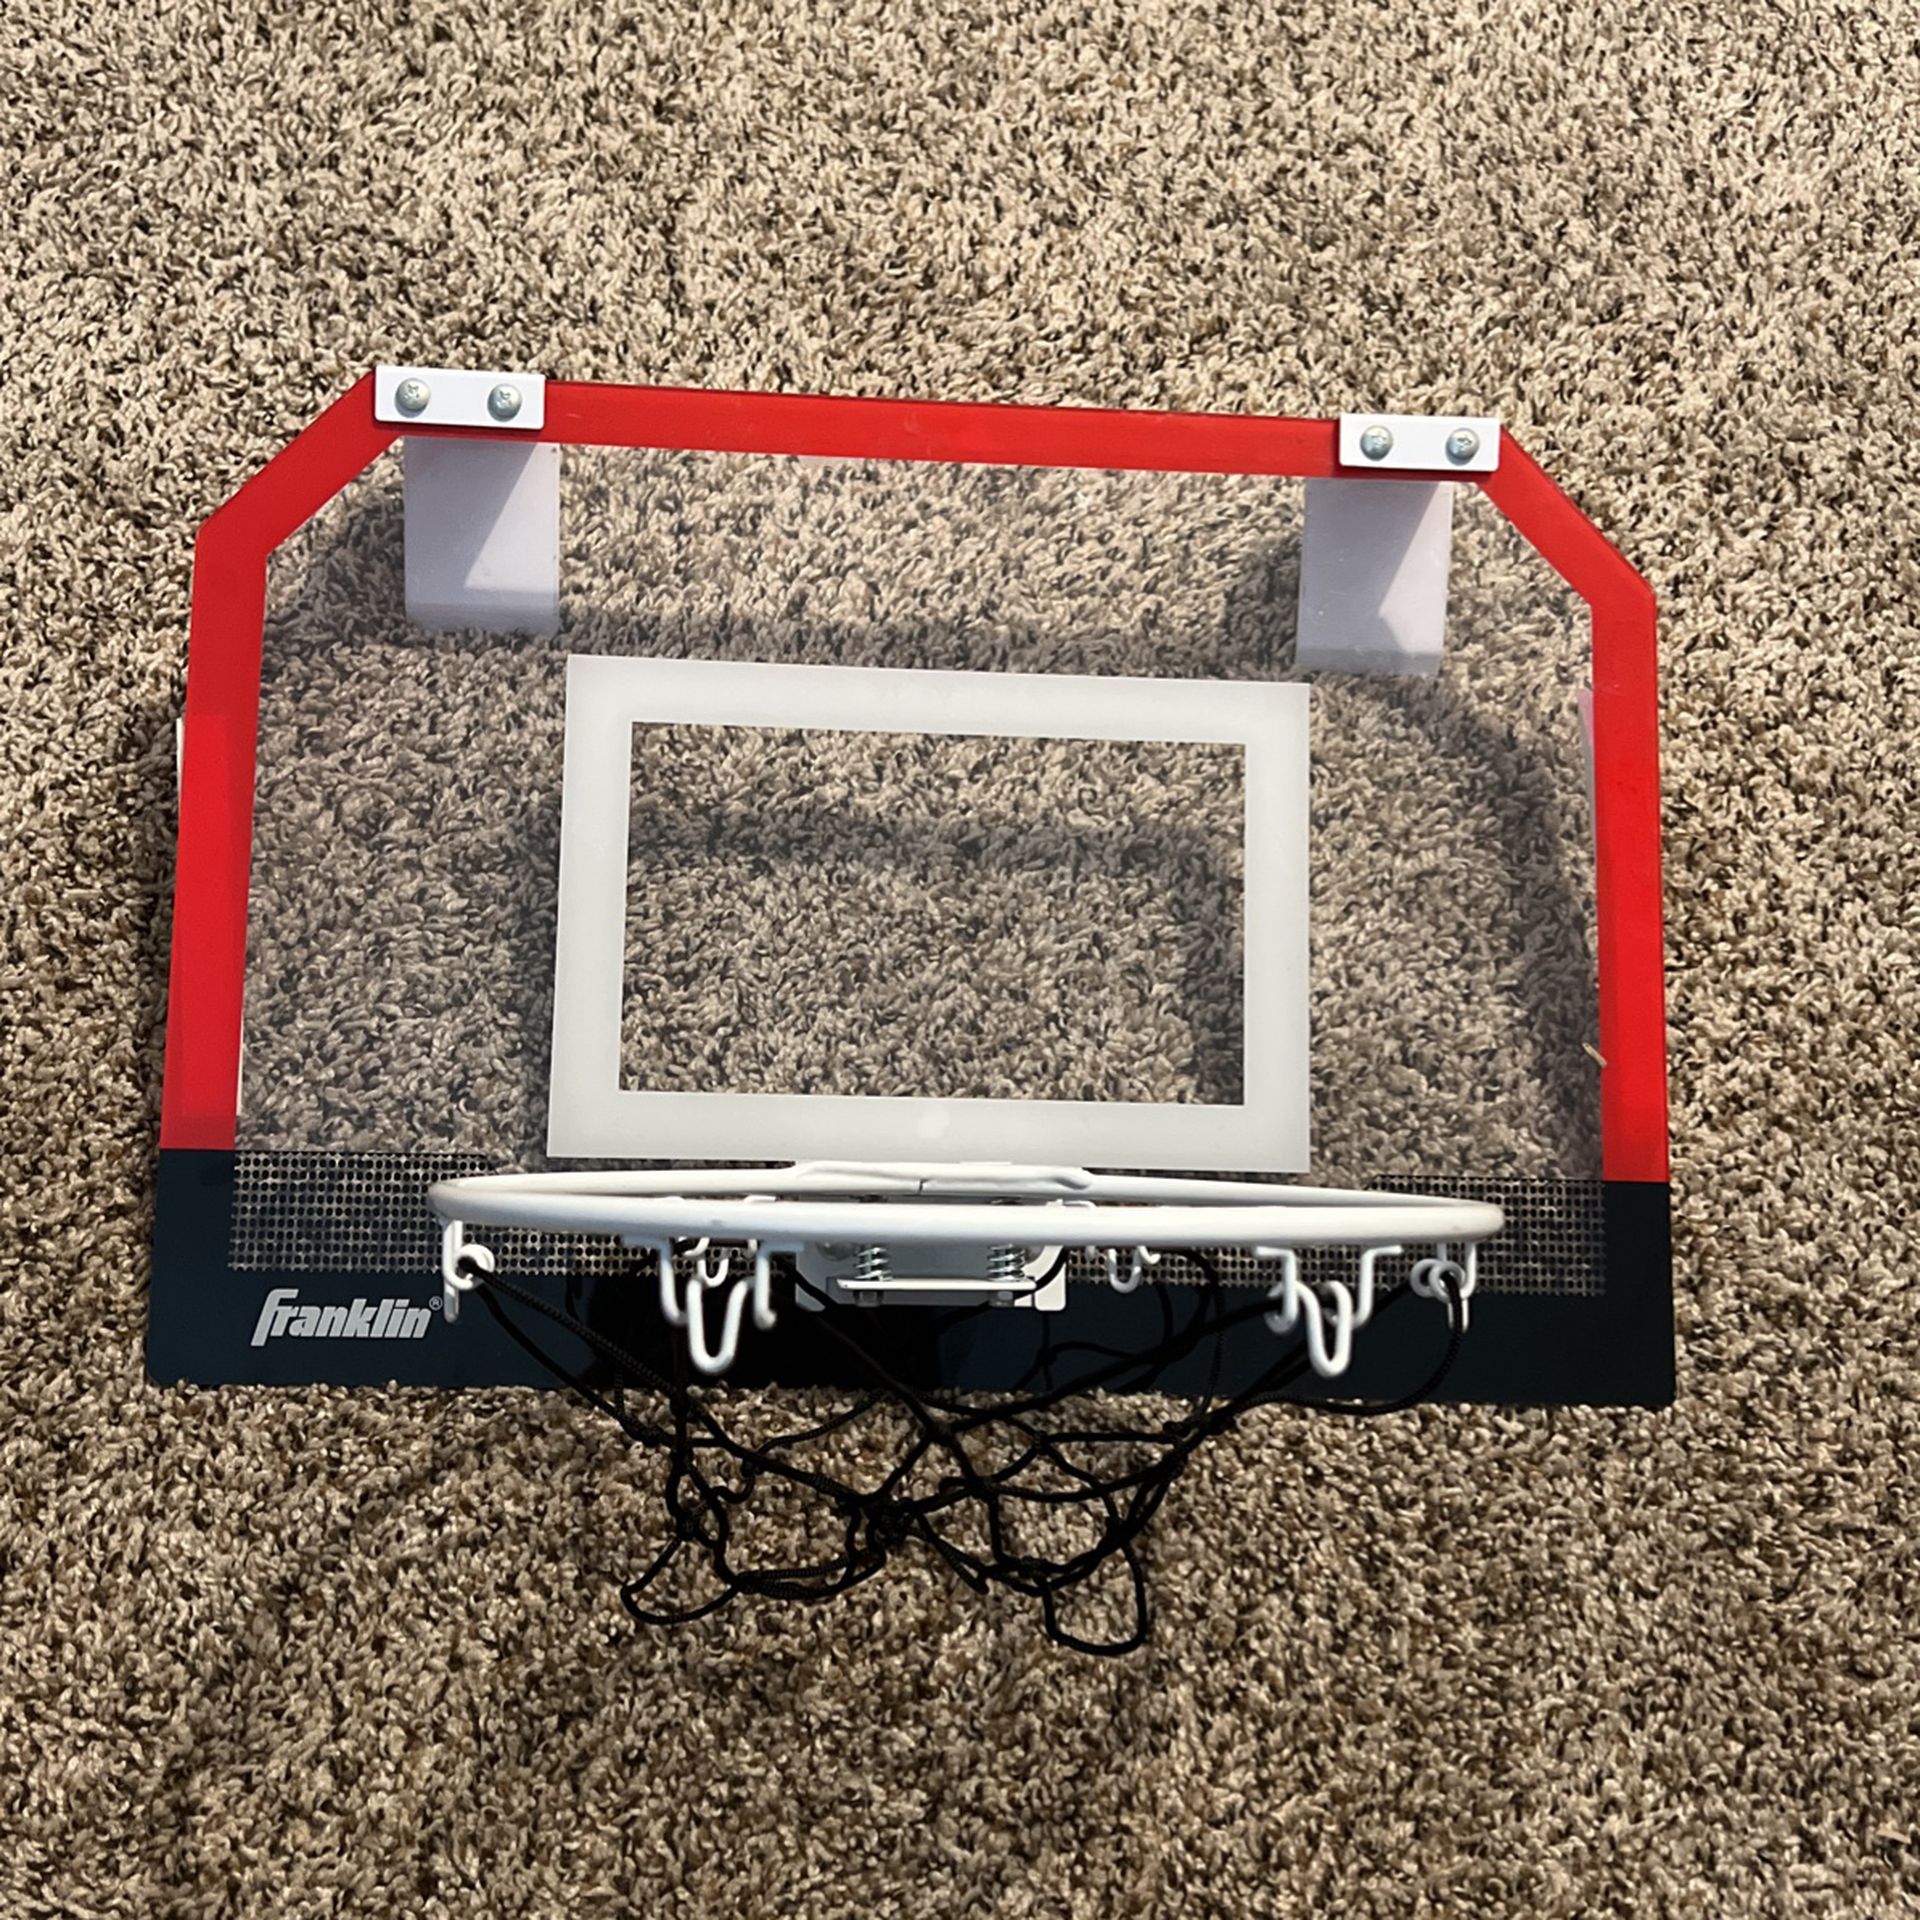 Little Basketball Hoop